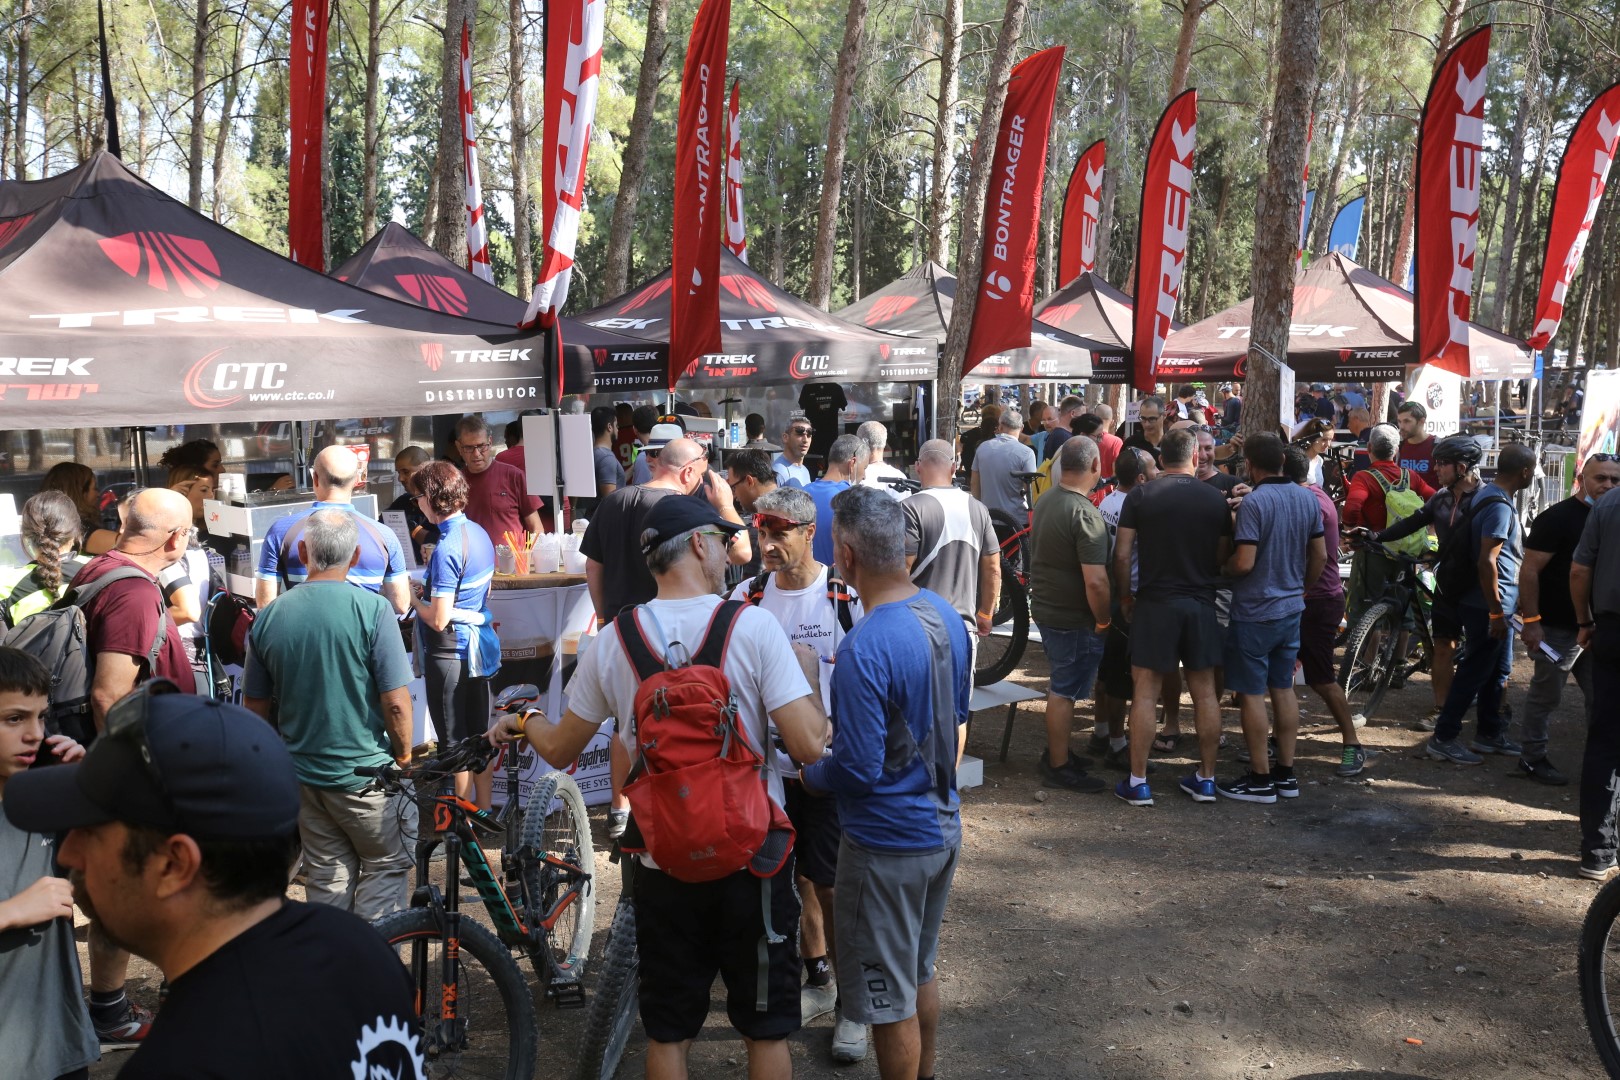 חדשות: חברת מוטוליין תיתן חסות ראשית לפסטיבל Bike.il DemoDay 2022